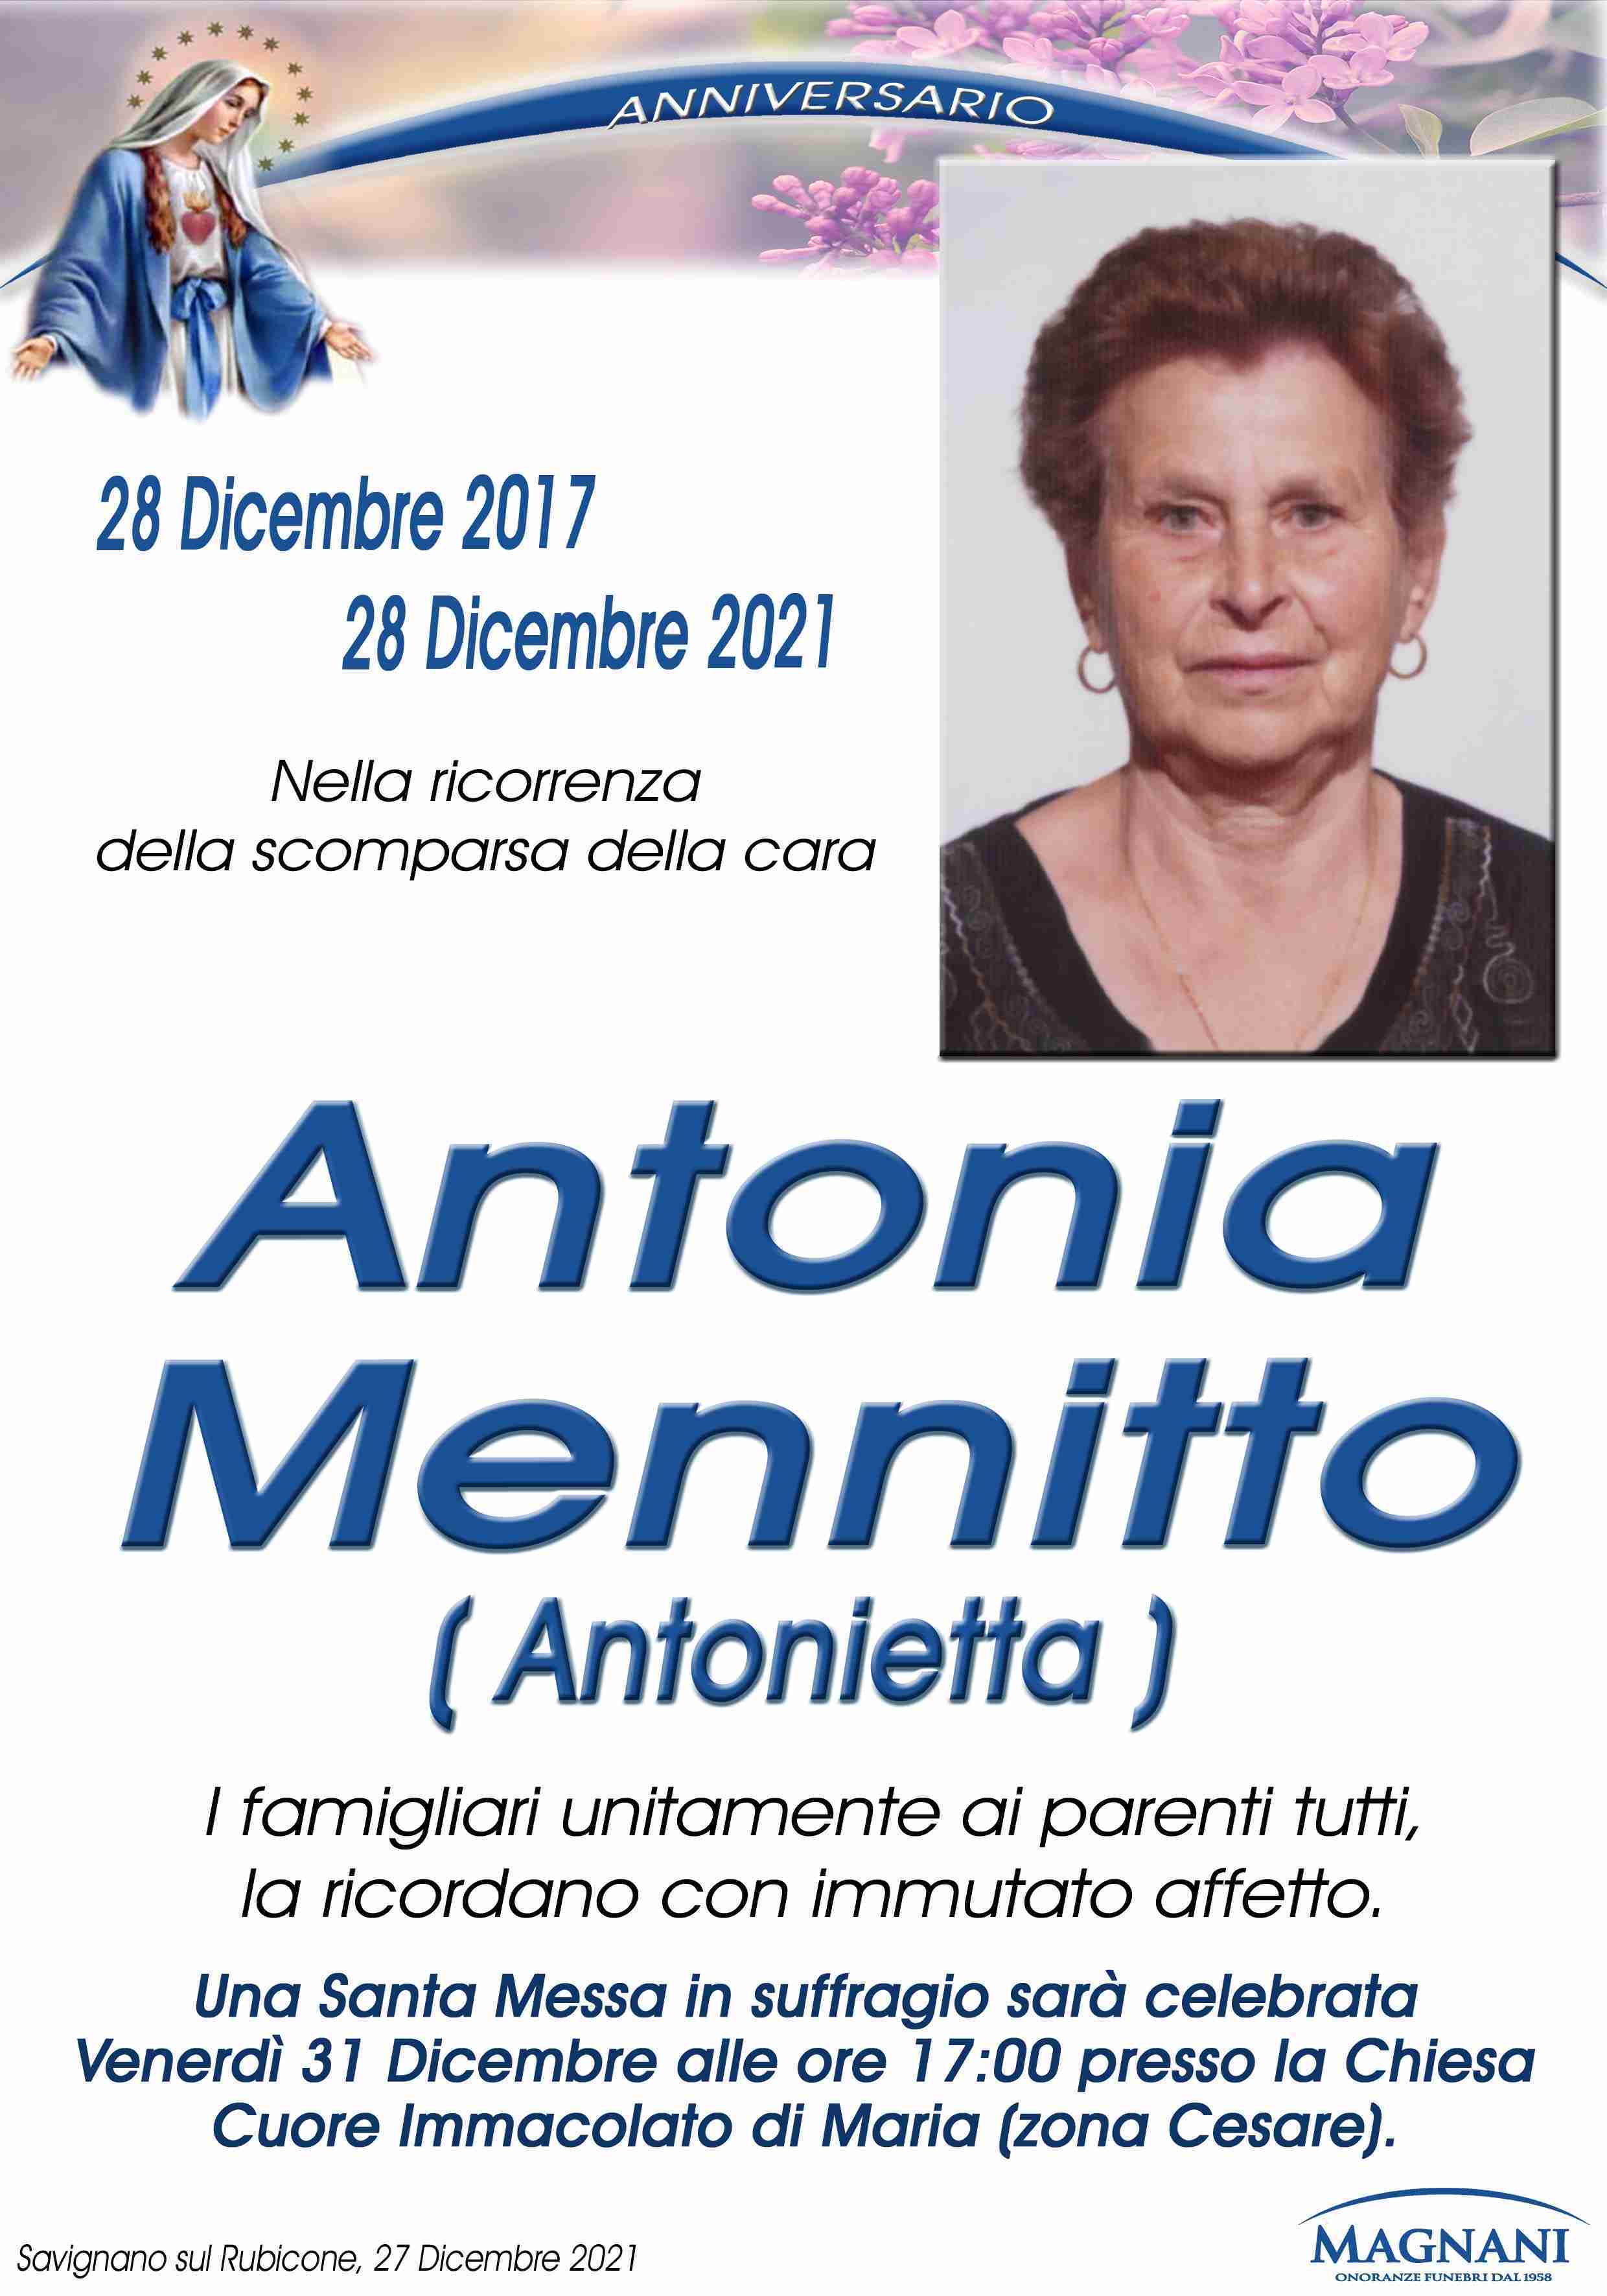 Antonia Mennitto